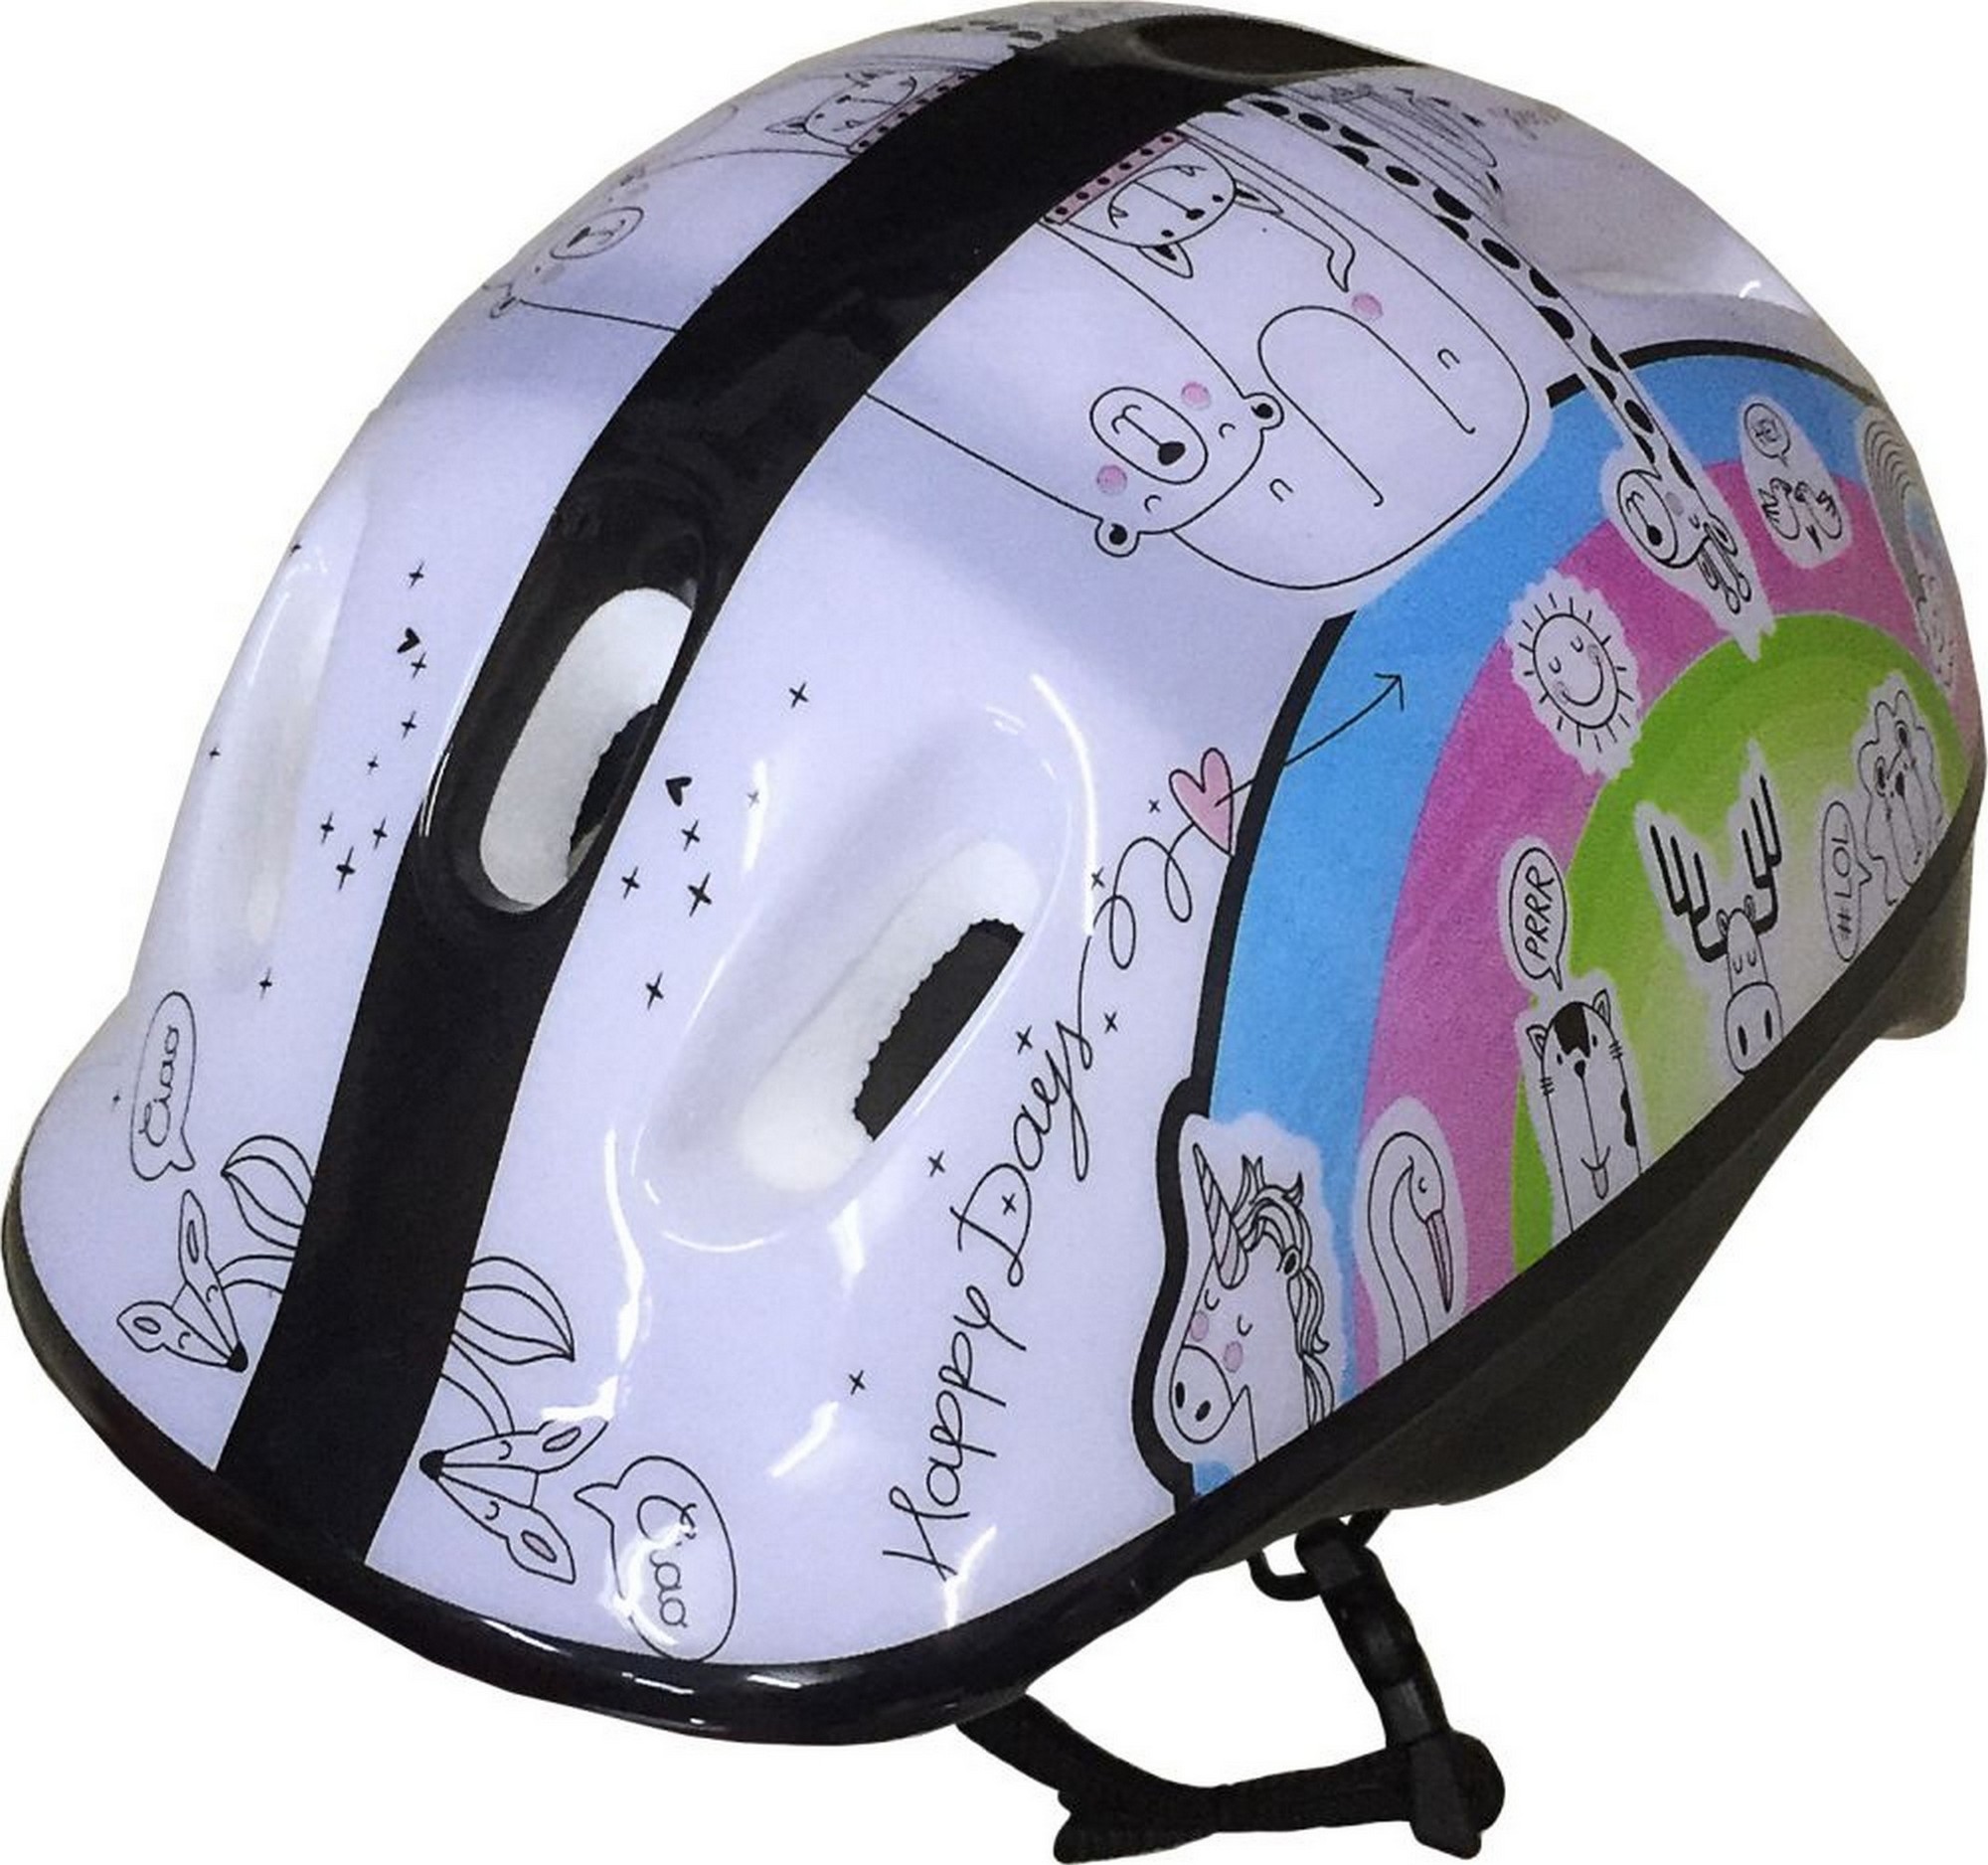 Шлем защитный подростковый Atemi размер окруж (52-54 см), М (6-12 лет) AKH06GM аквапринт Зверушки 2000_1876